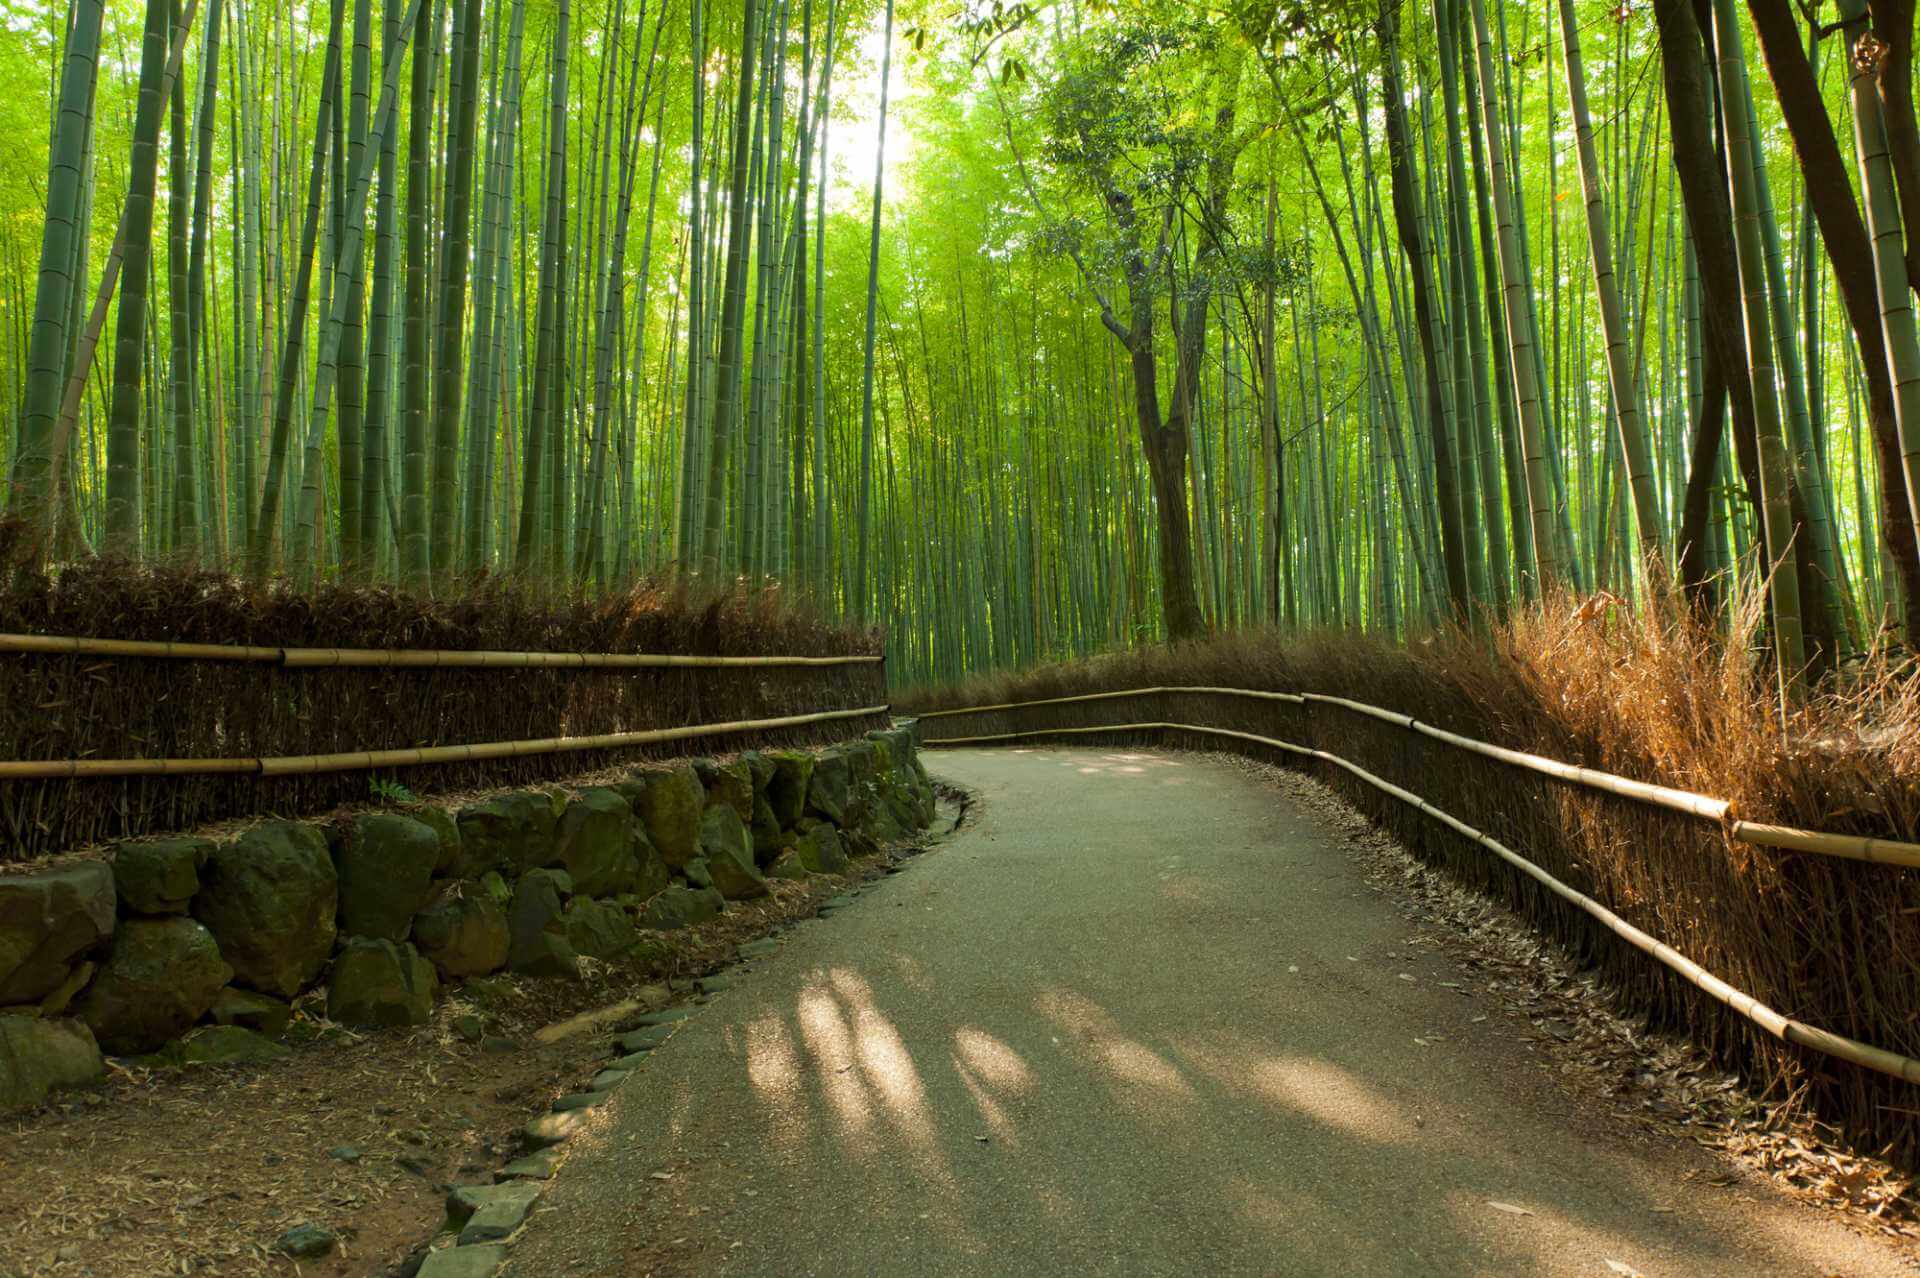 Clear path through bamboo grove